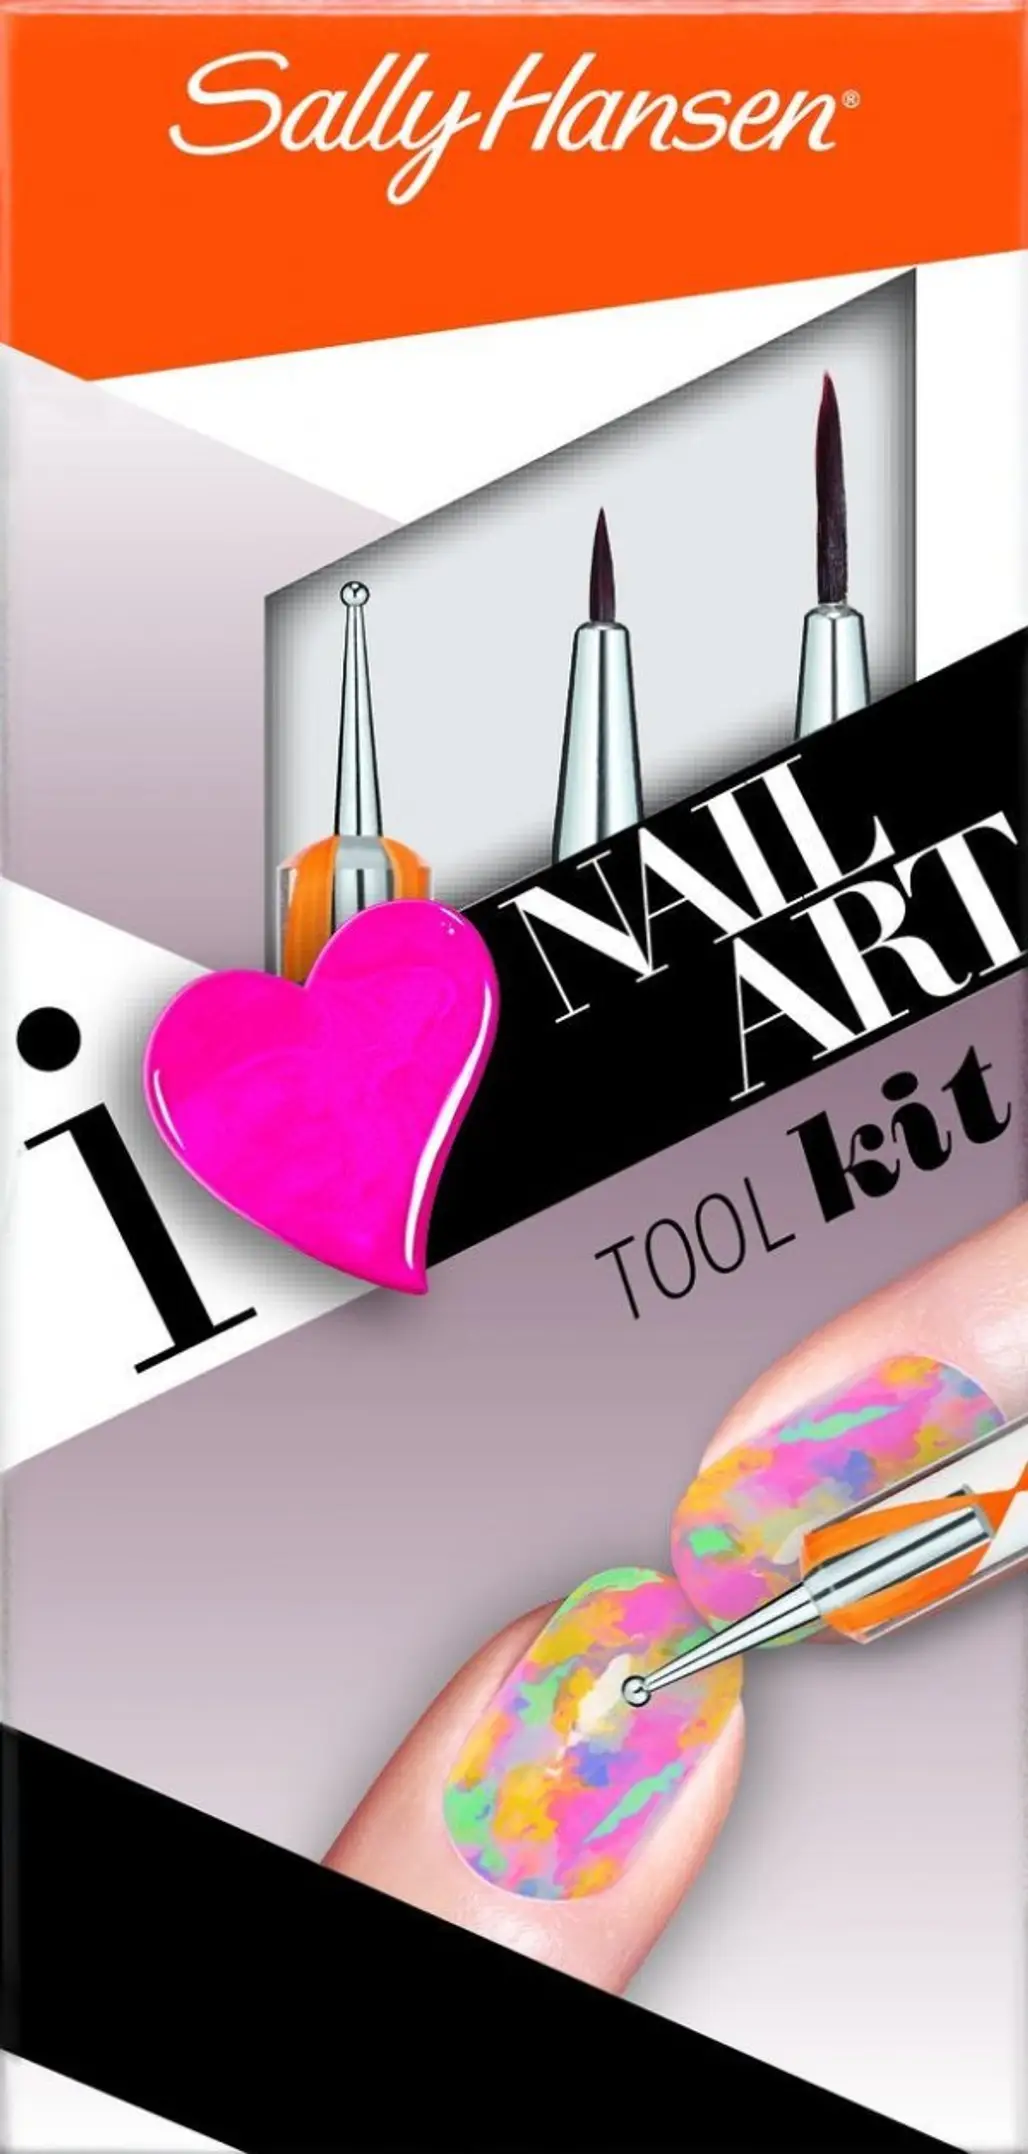 Sally Hansen Nail Art Tool